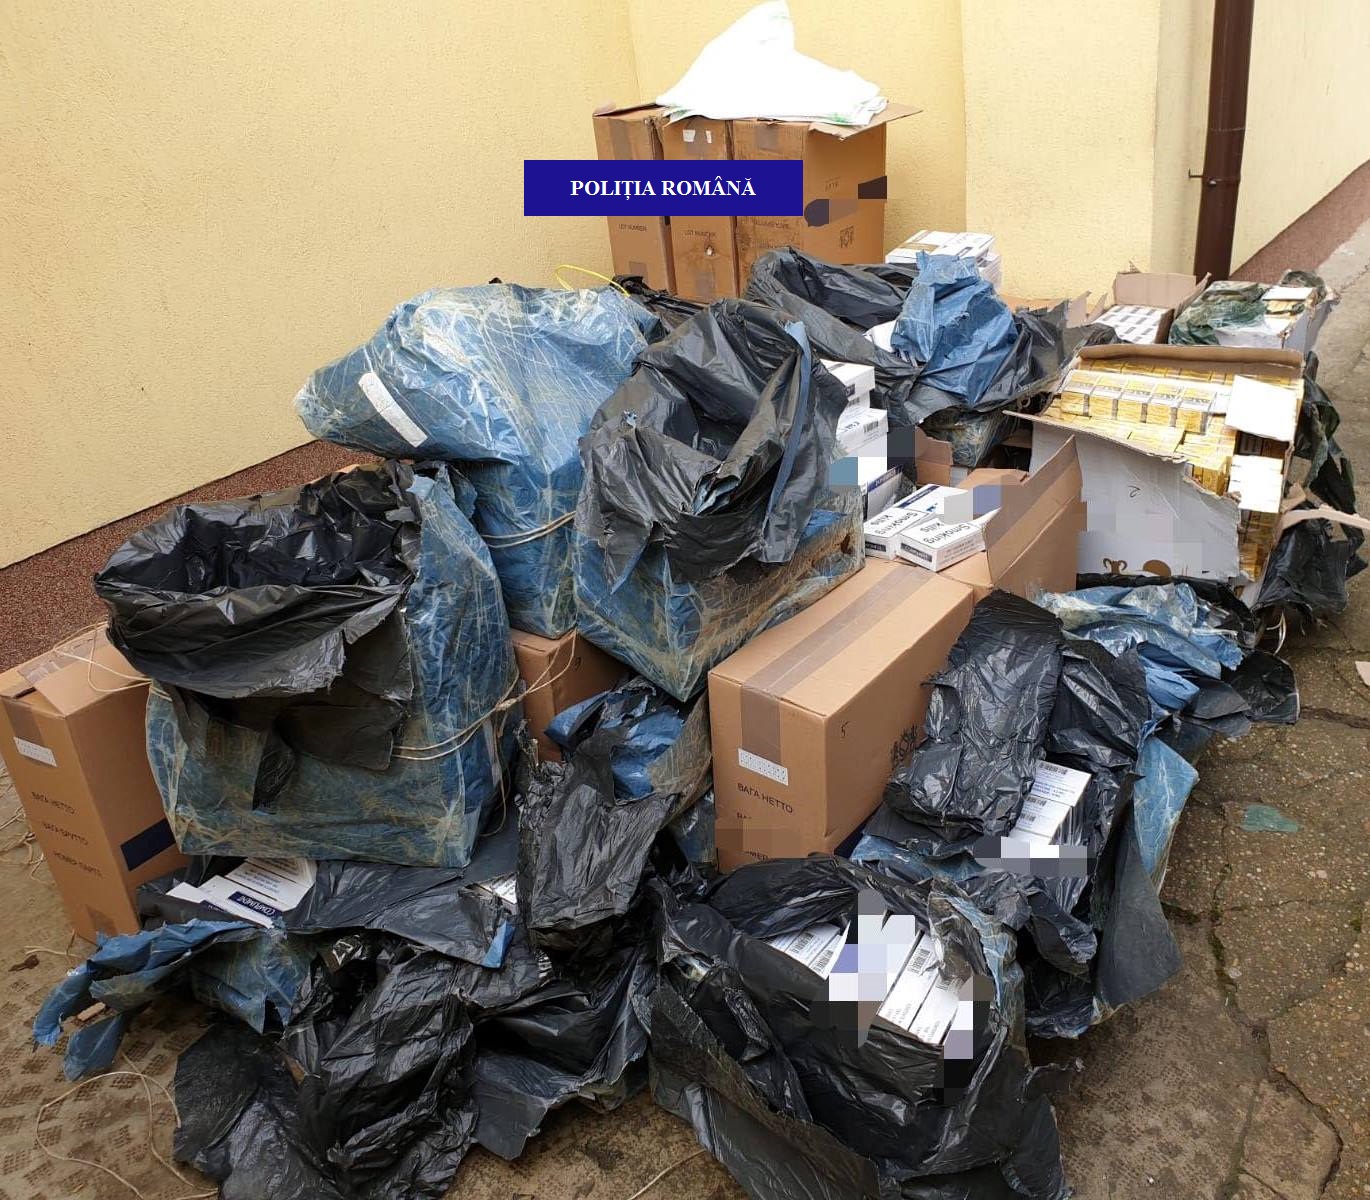 FOTO: Țigări confiscate Băile Felix 28.02.2020